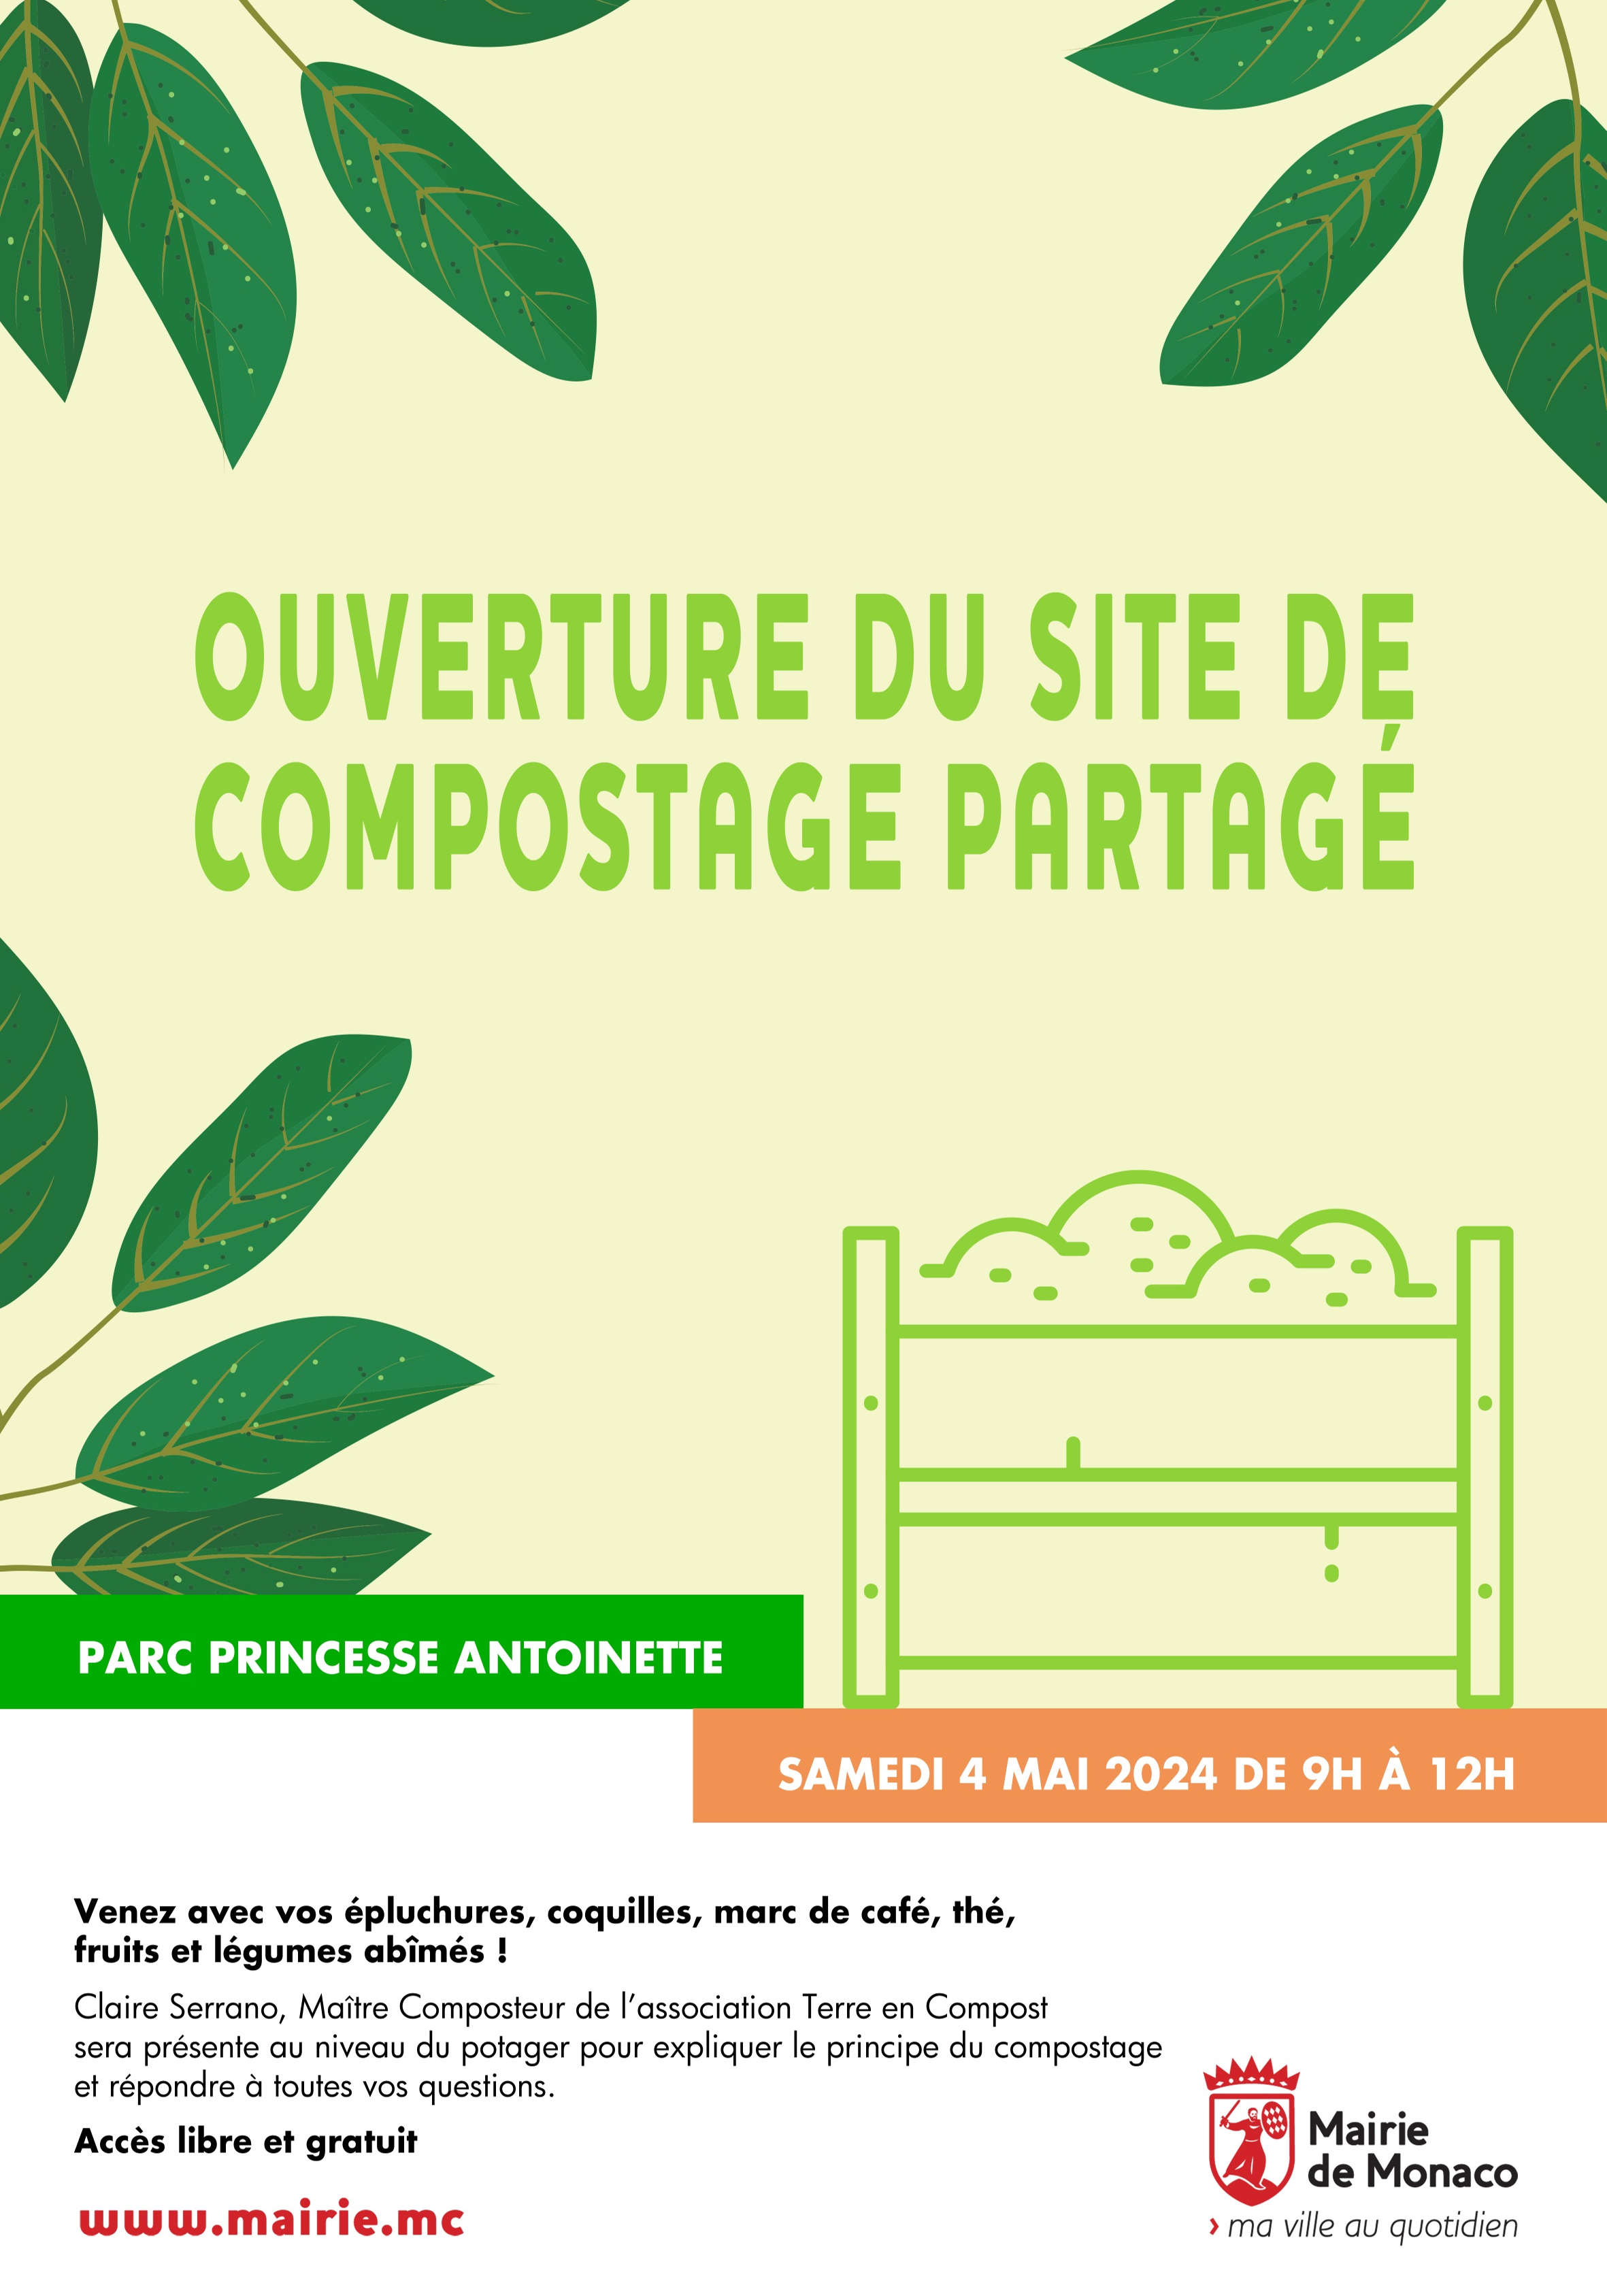 Ouverture du site de compostage partagé